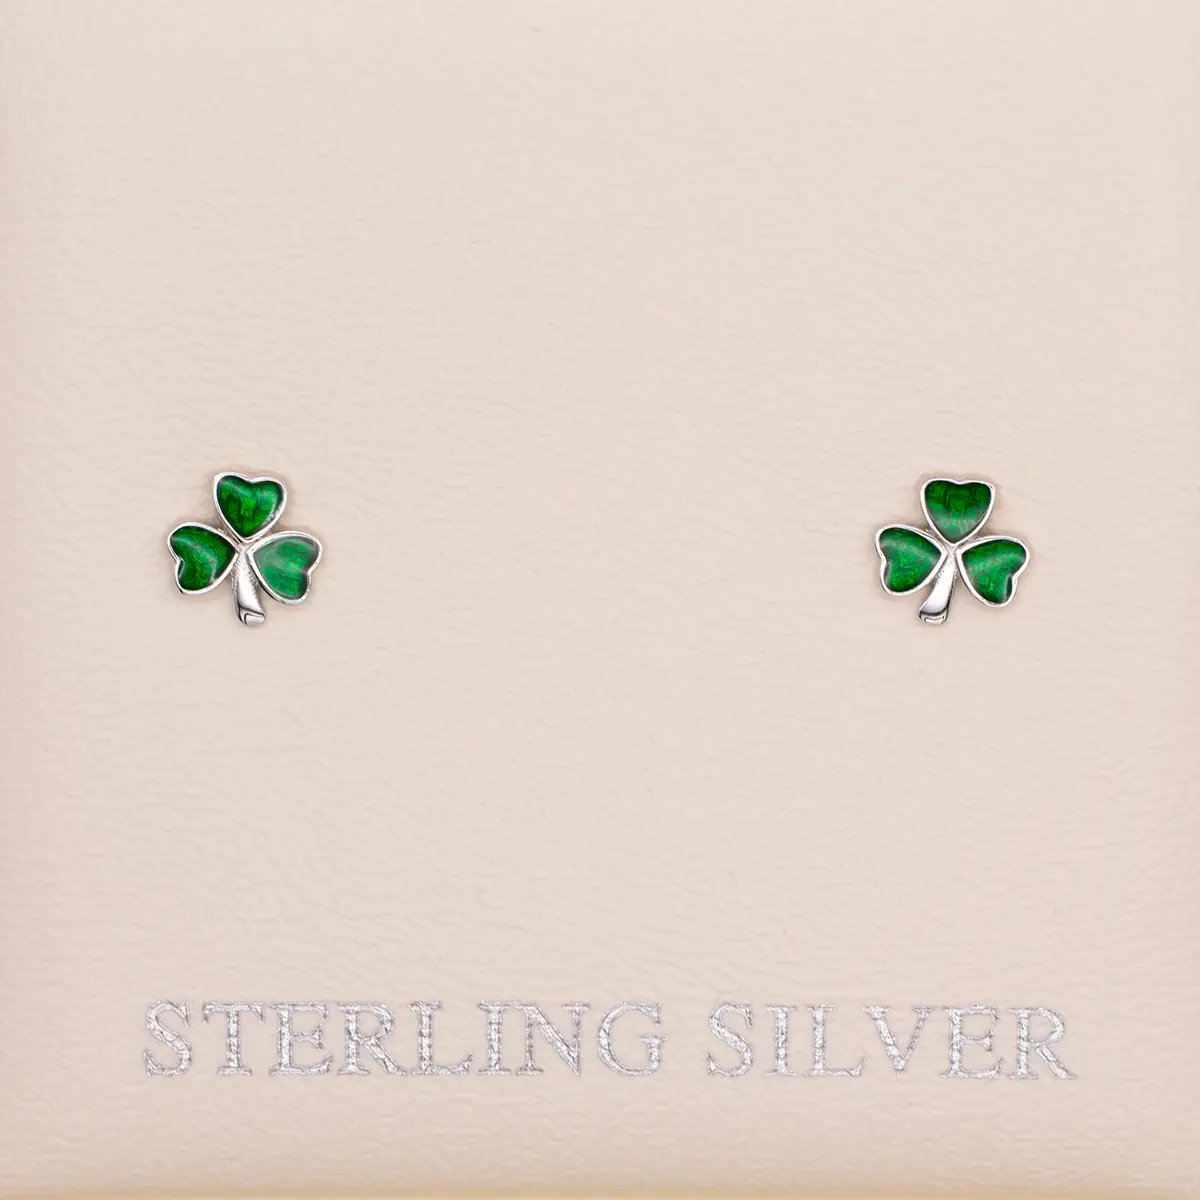 Silver Shamrock Stud Earrings Set With Green Enamel